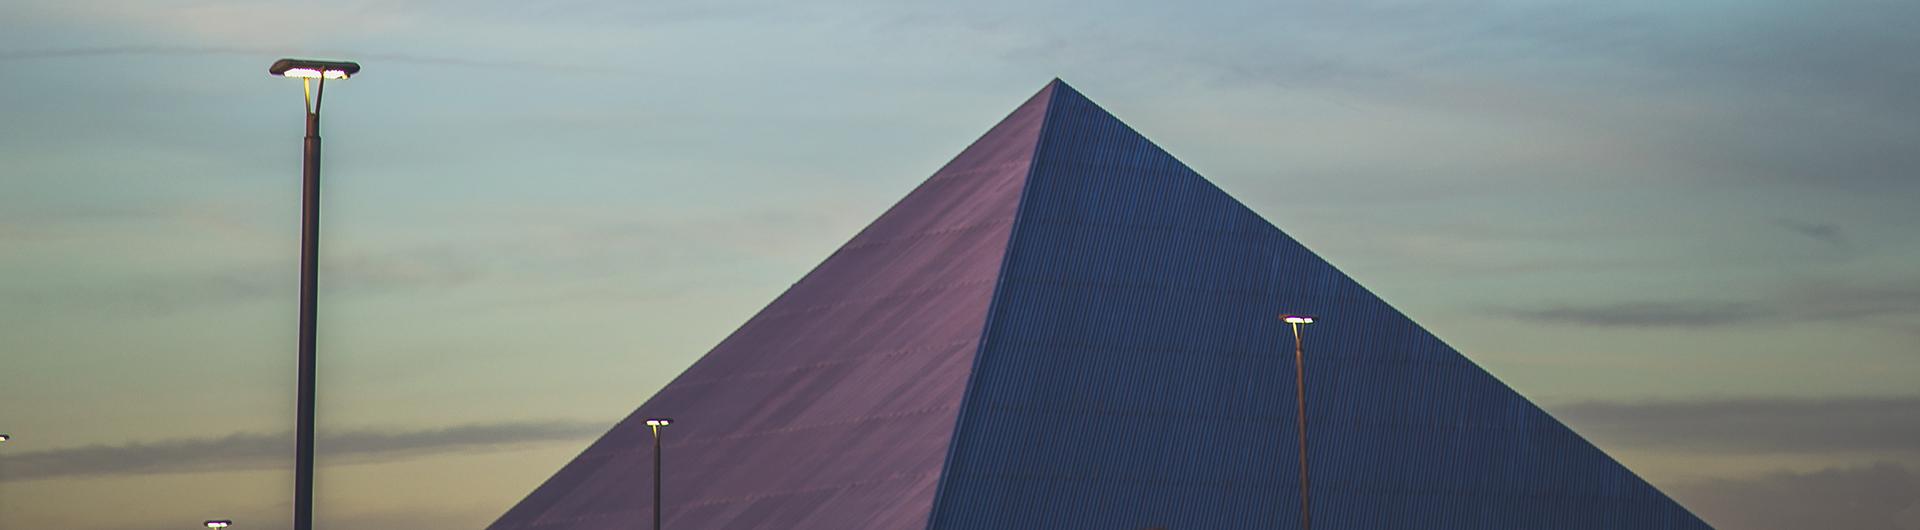 Pyramid at Sunset